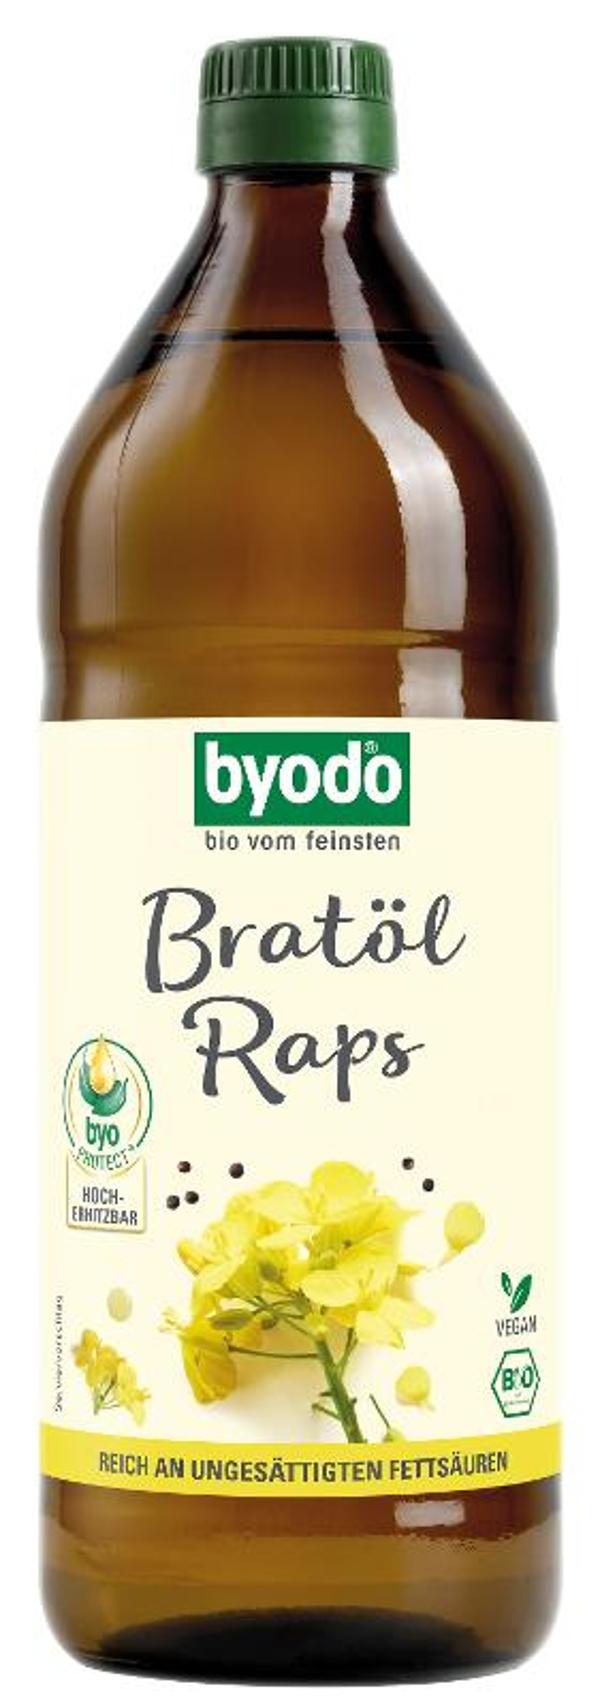 Produktfoto zu Bratöl-Raps Byodo